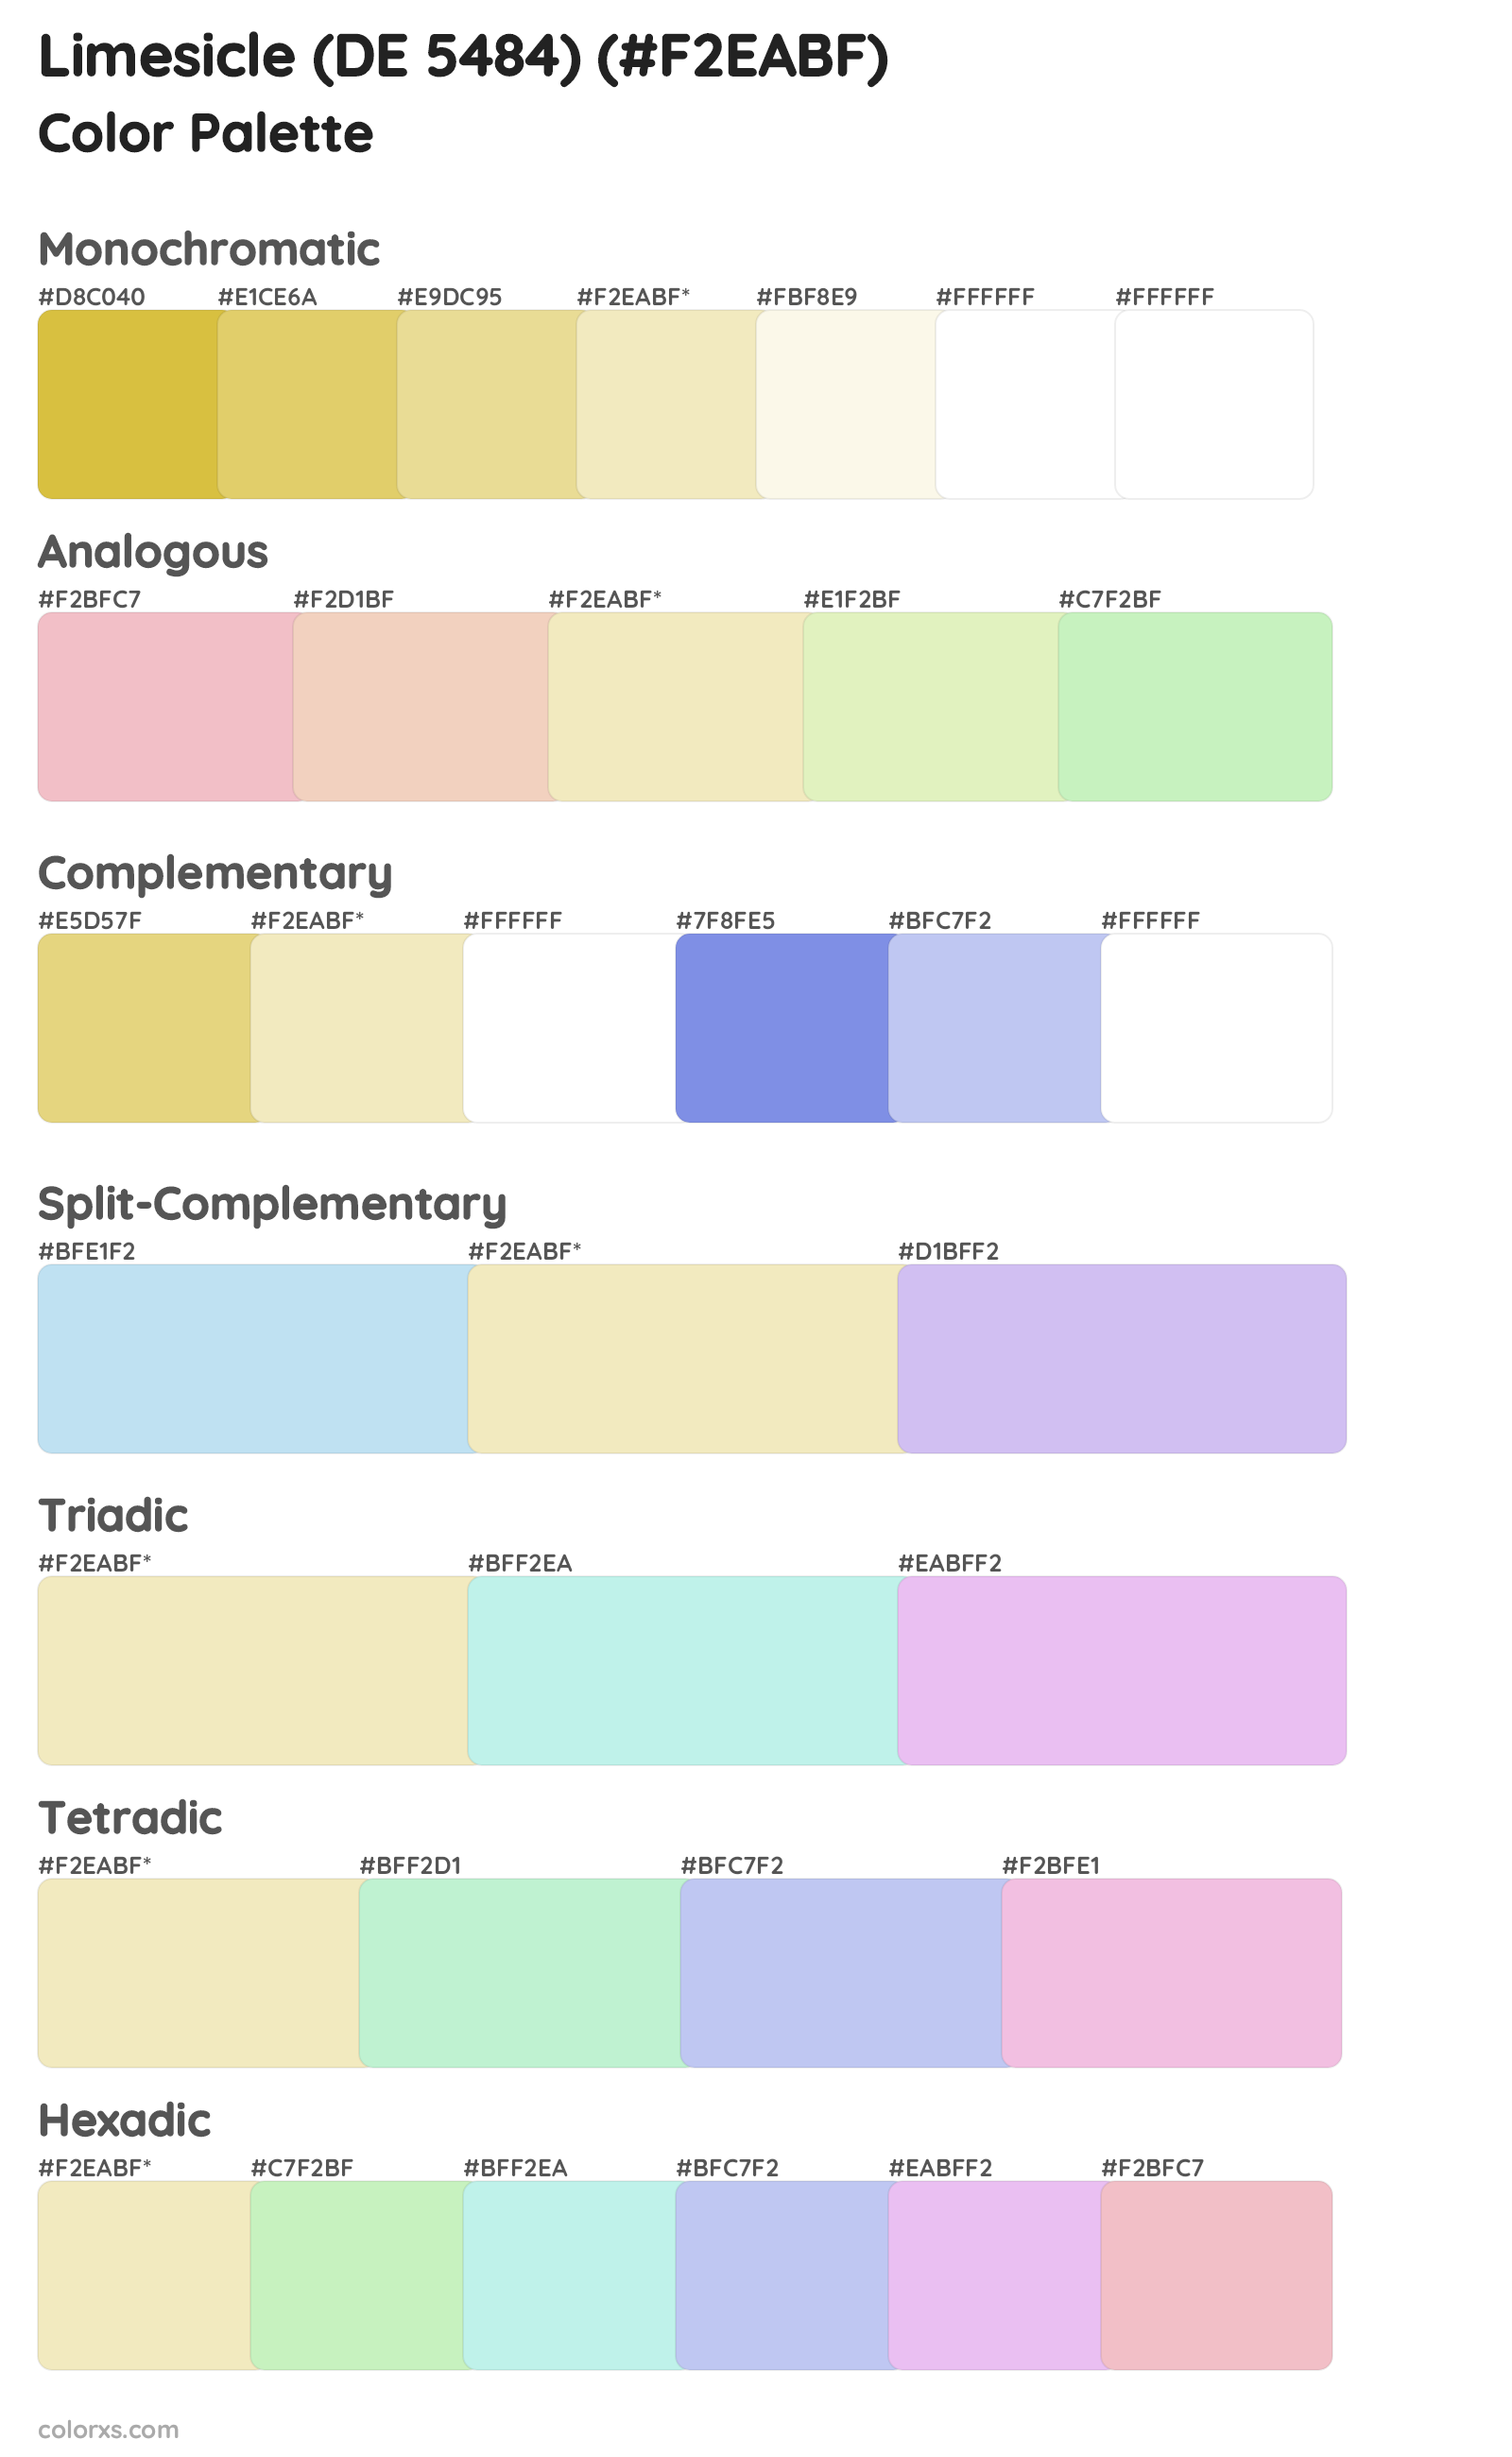 Limesicle (DE 5484) Color Scheme Palettes